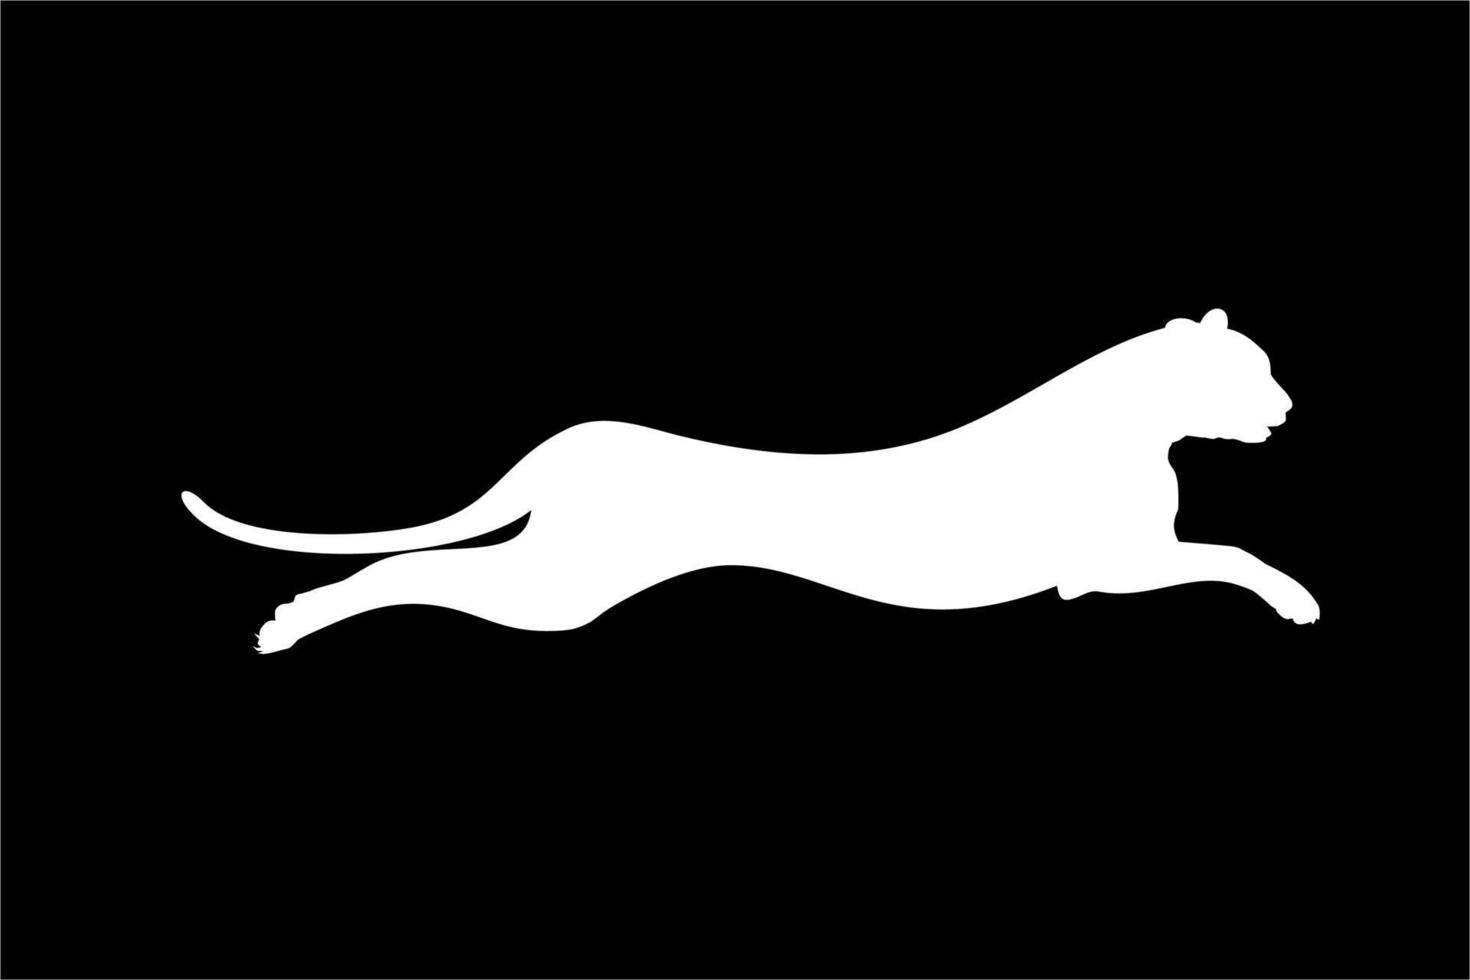 silueta del gato salvaje saltador, tigre, leopardo, pantera, guepardo, jaguar y familia de grandes felinos, para logotipo, pictograma, sitio web o elemento de diseño gráfico. ilustración vectorial vector